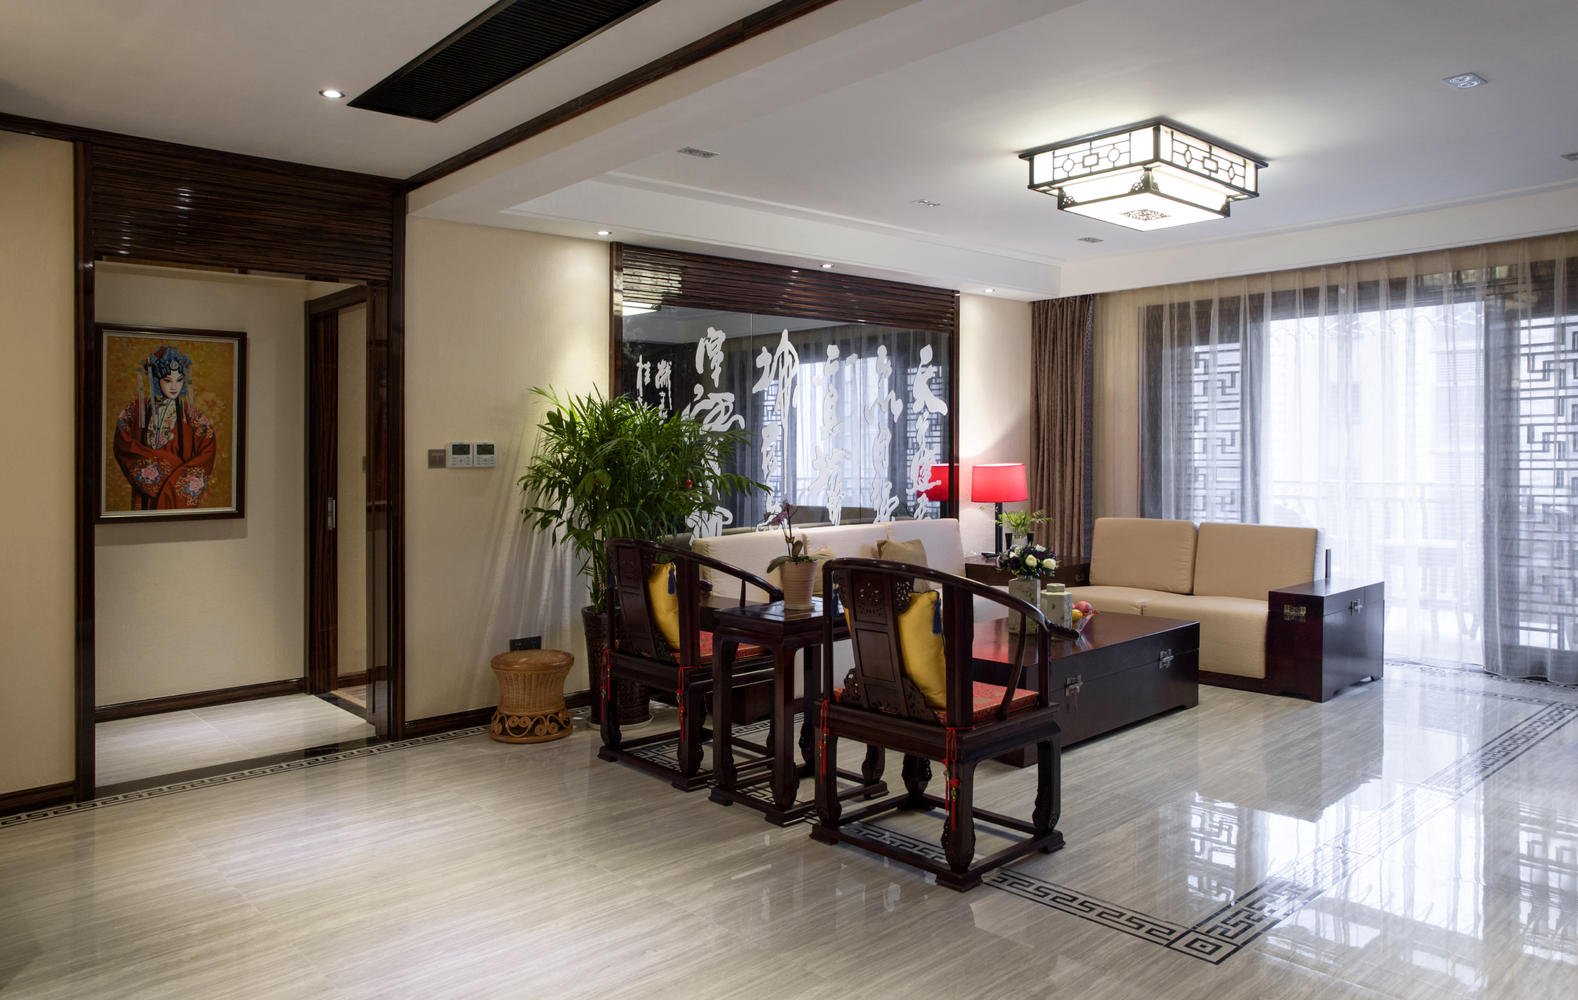 中式风格的家，享受舒适醇正的中式生活氛围